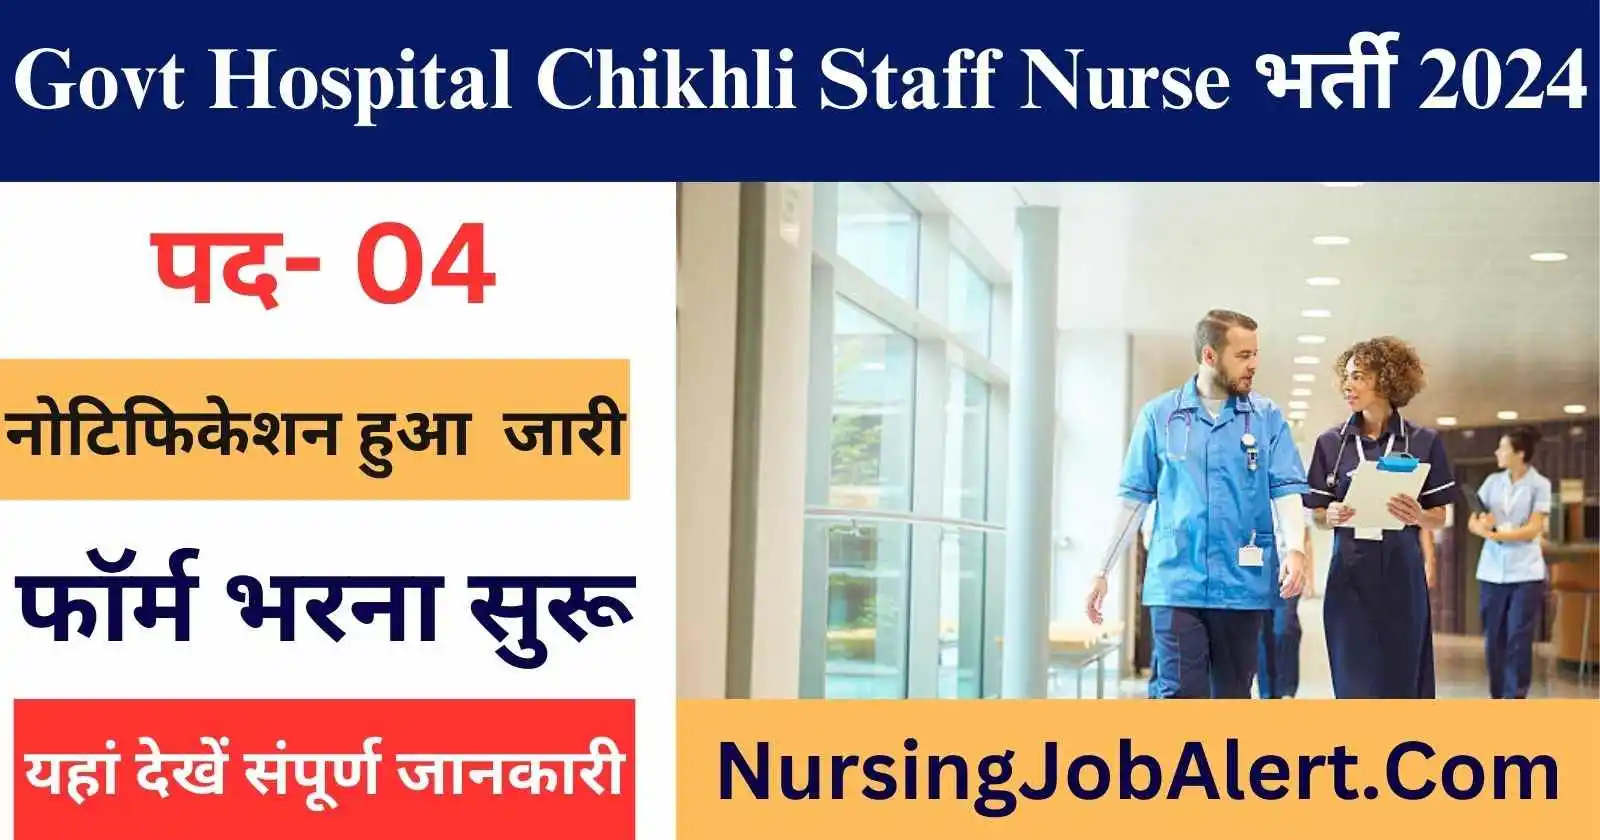 Govt Hospital Chikhli Staff Nurse Recruitment 2024 